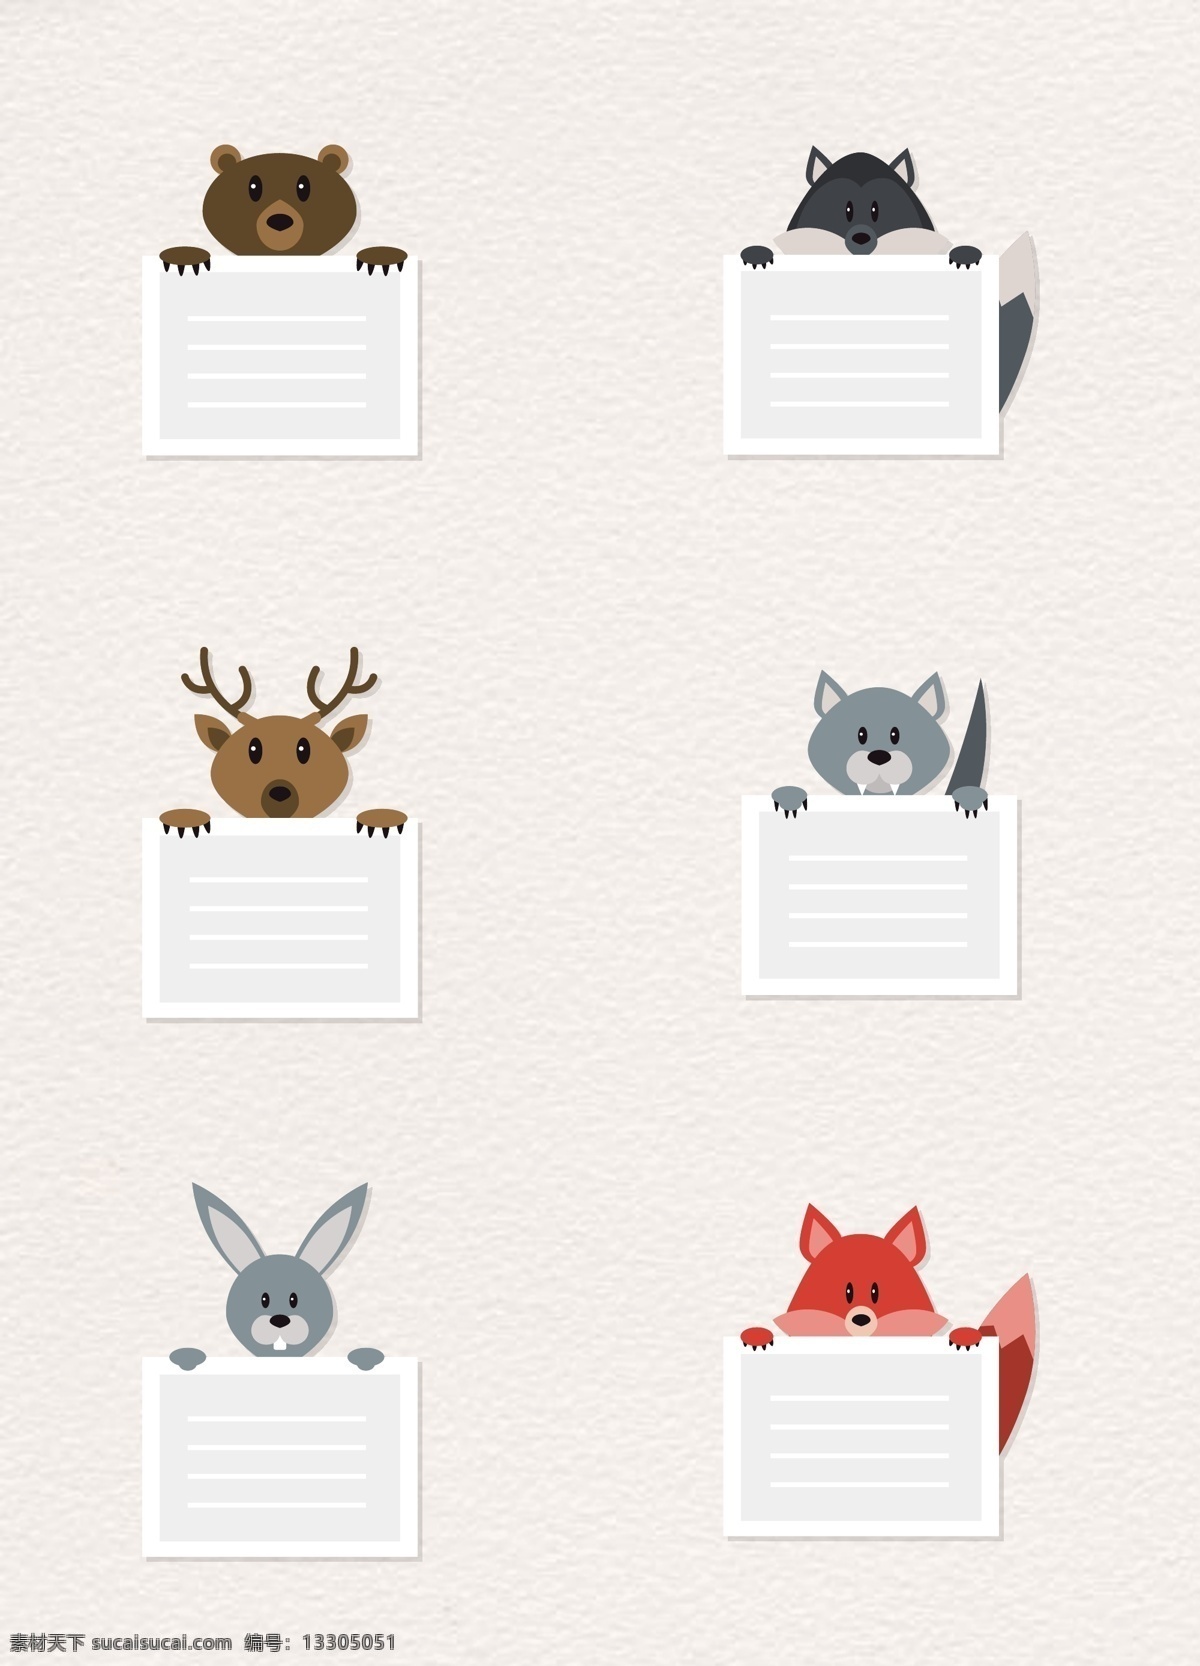 森林 动物 标签 矢量图 卡通 边框 便利贴 麋鹿 狐狸 森林动物 动物标签 卡通标签 矢量标签 熊